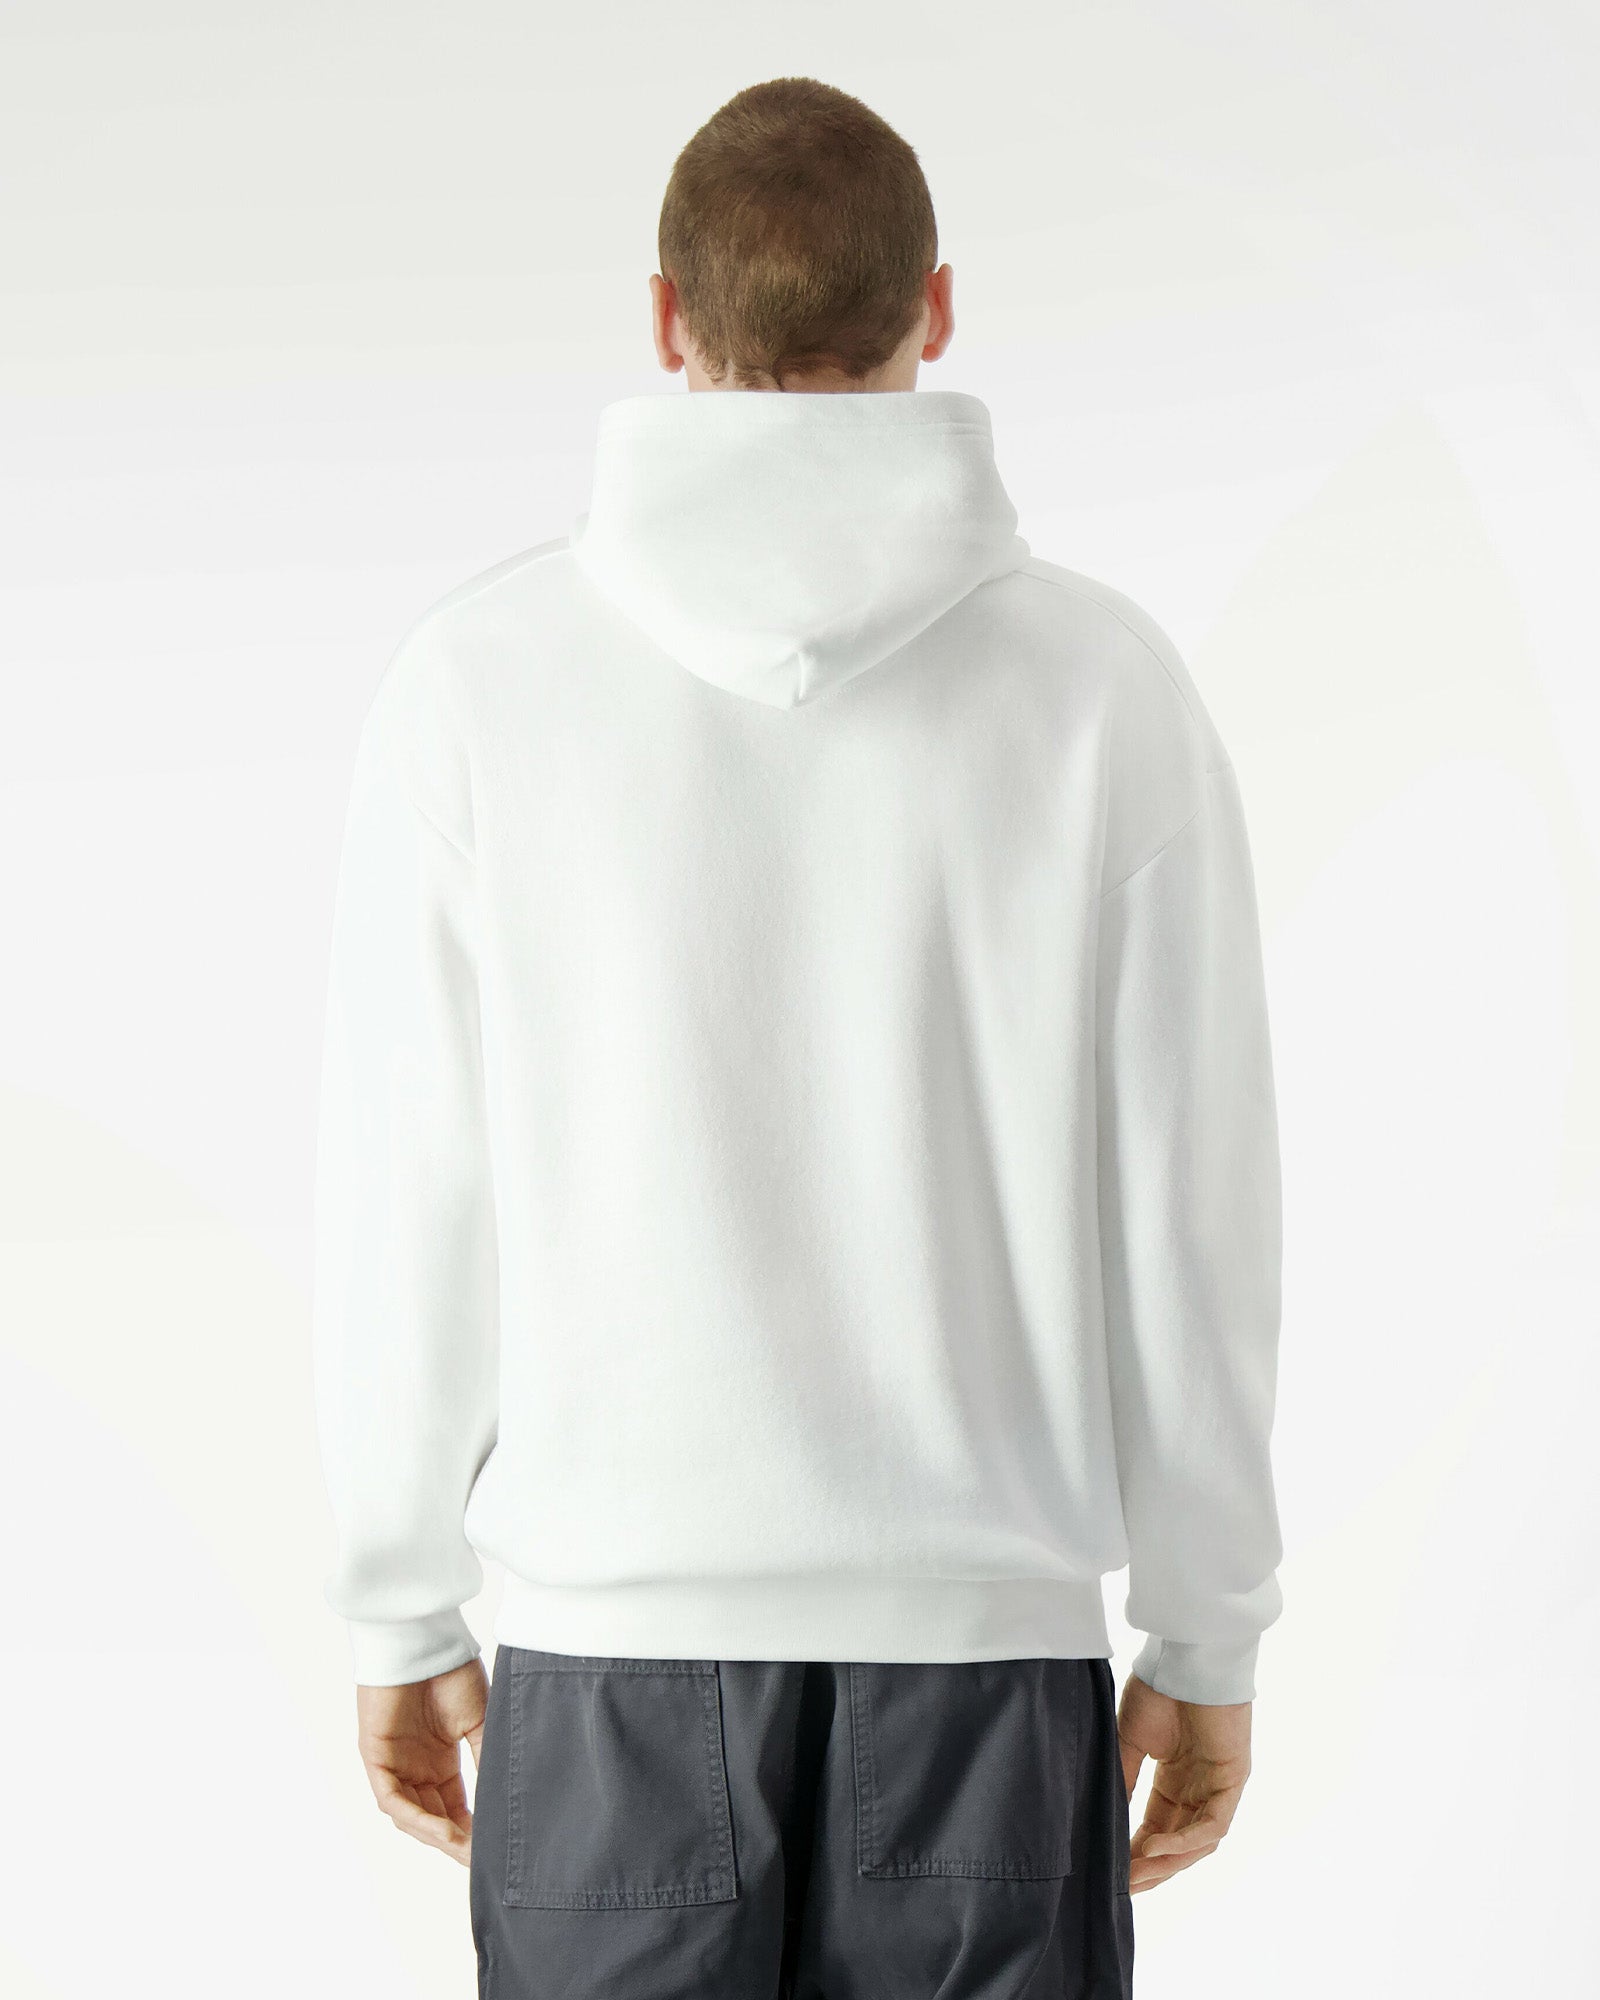 Reflex Unisex Hooded Sweatshirt - White